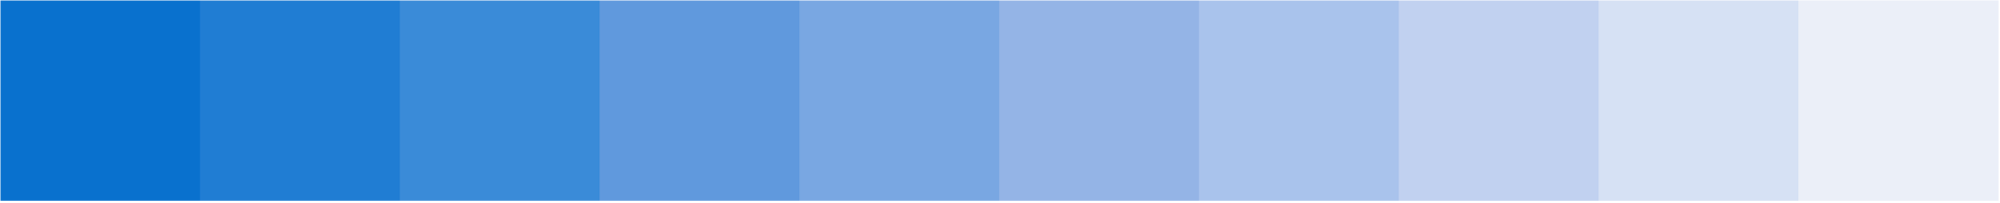 Nittedal kommune sekundærfarge blåtimen